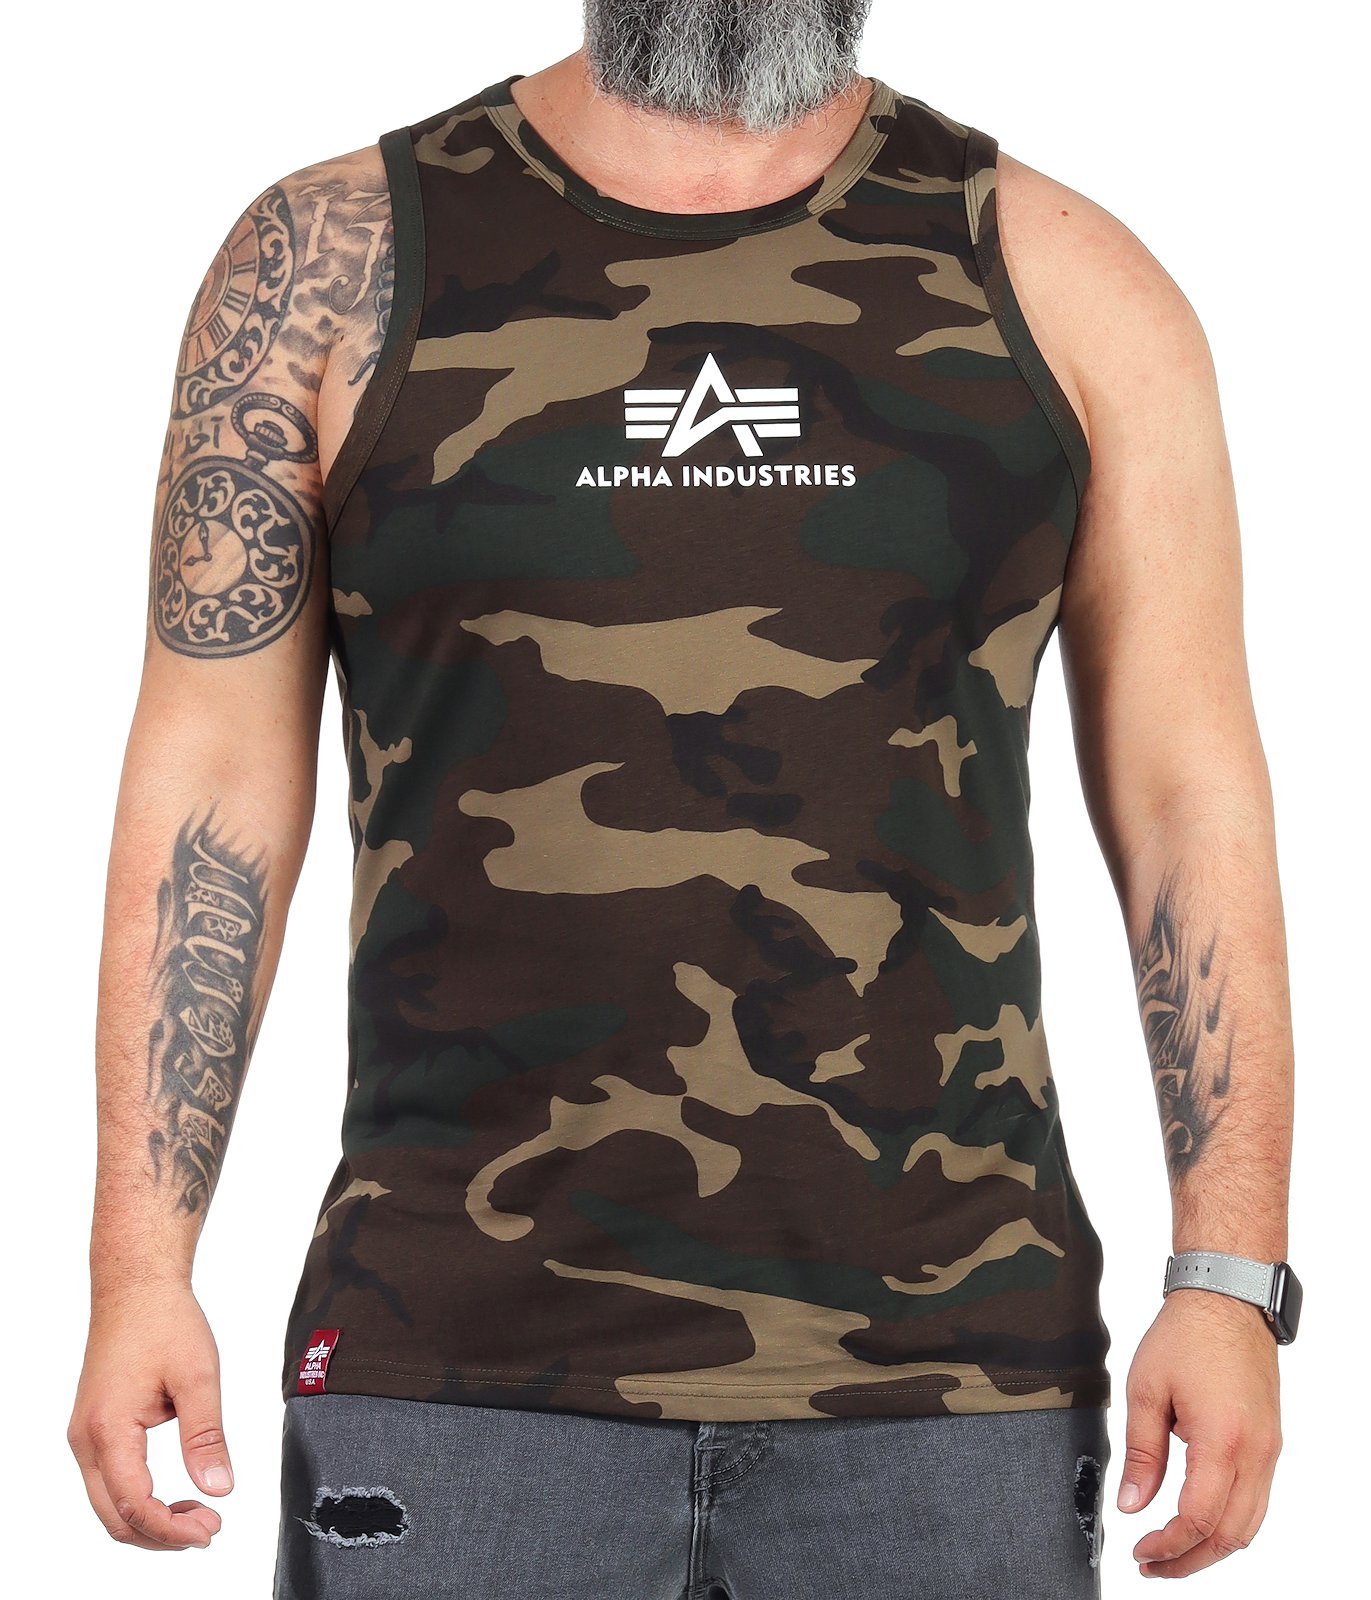 Alpha Industries Herren Tank 126566 Shirt Top Muskelshirt eBay Achselshirt Basic 